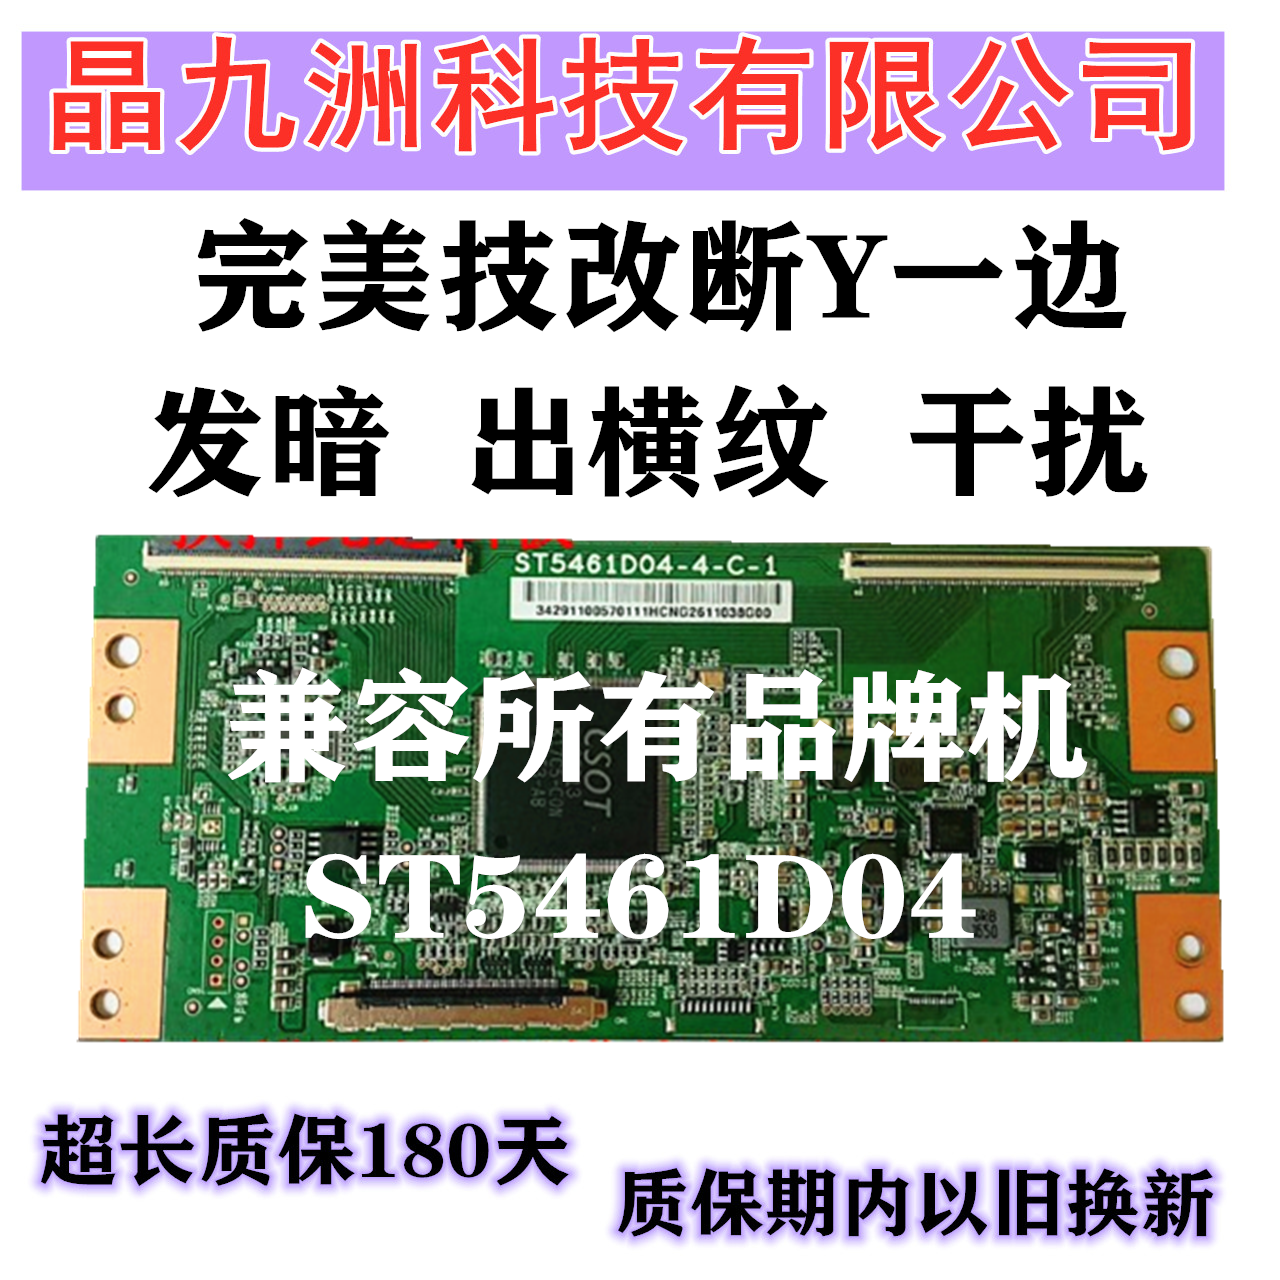 全新华星技改ST5461D04-1-C-1 4K逻辑板 专门解决撕Y后发黑暗带 - 图0